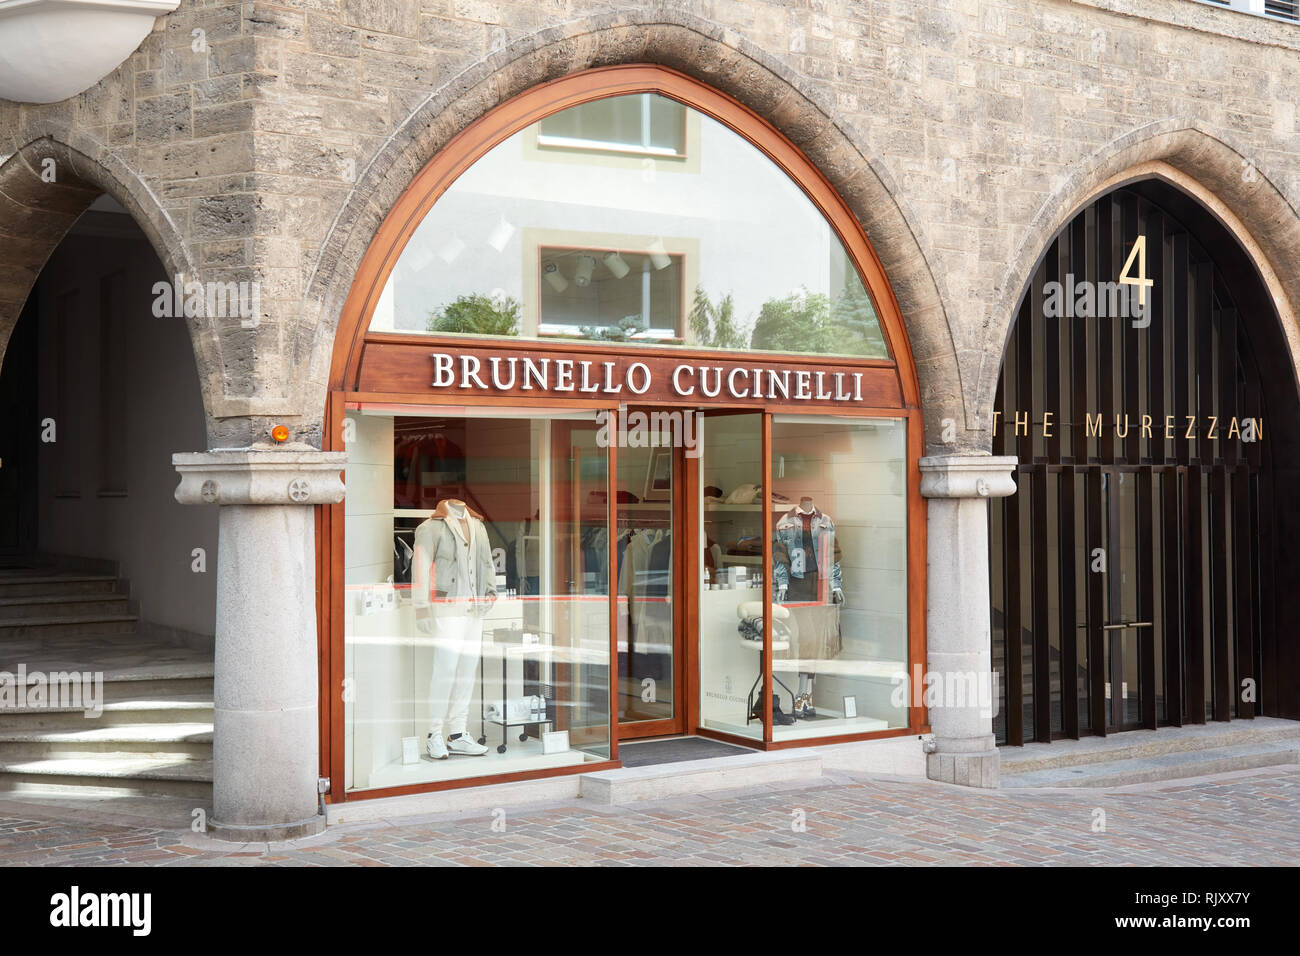 BRUNELLO CUCINELLI SHOWCASE WOMEN'S SPRING SUMMER 2020 AT MILAN